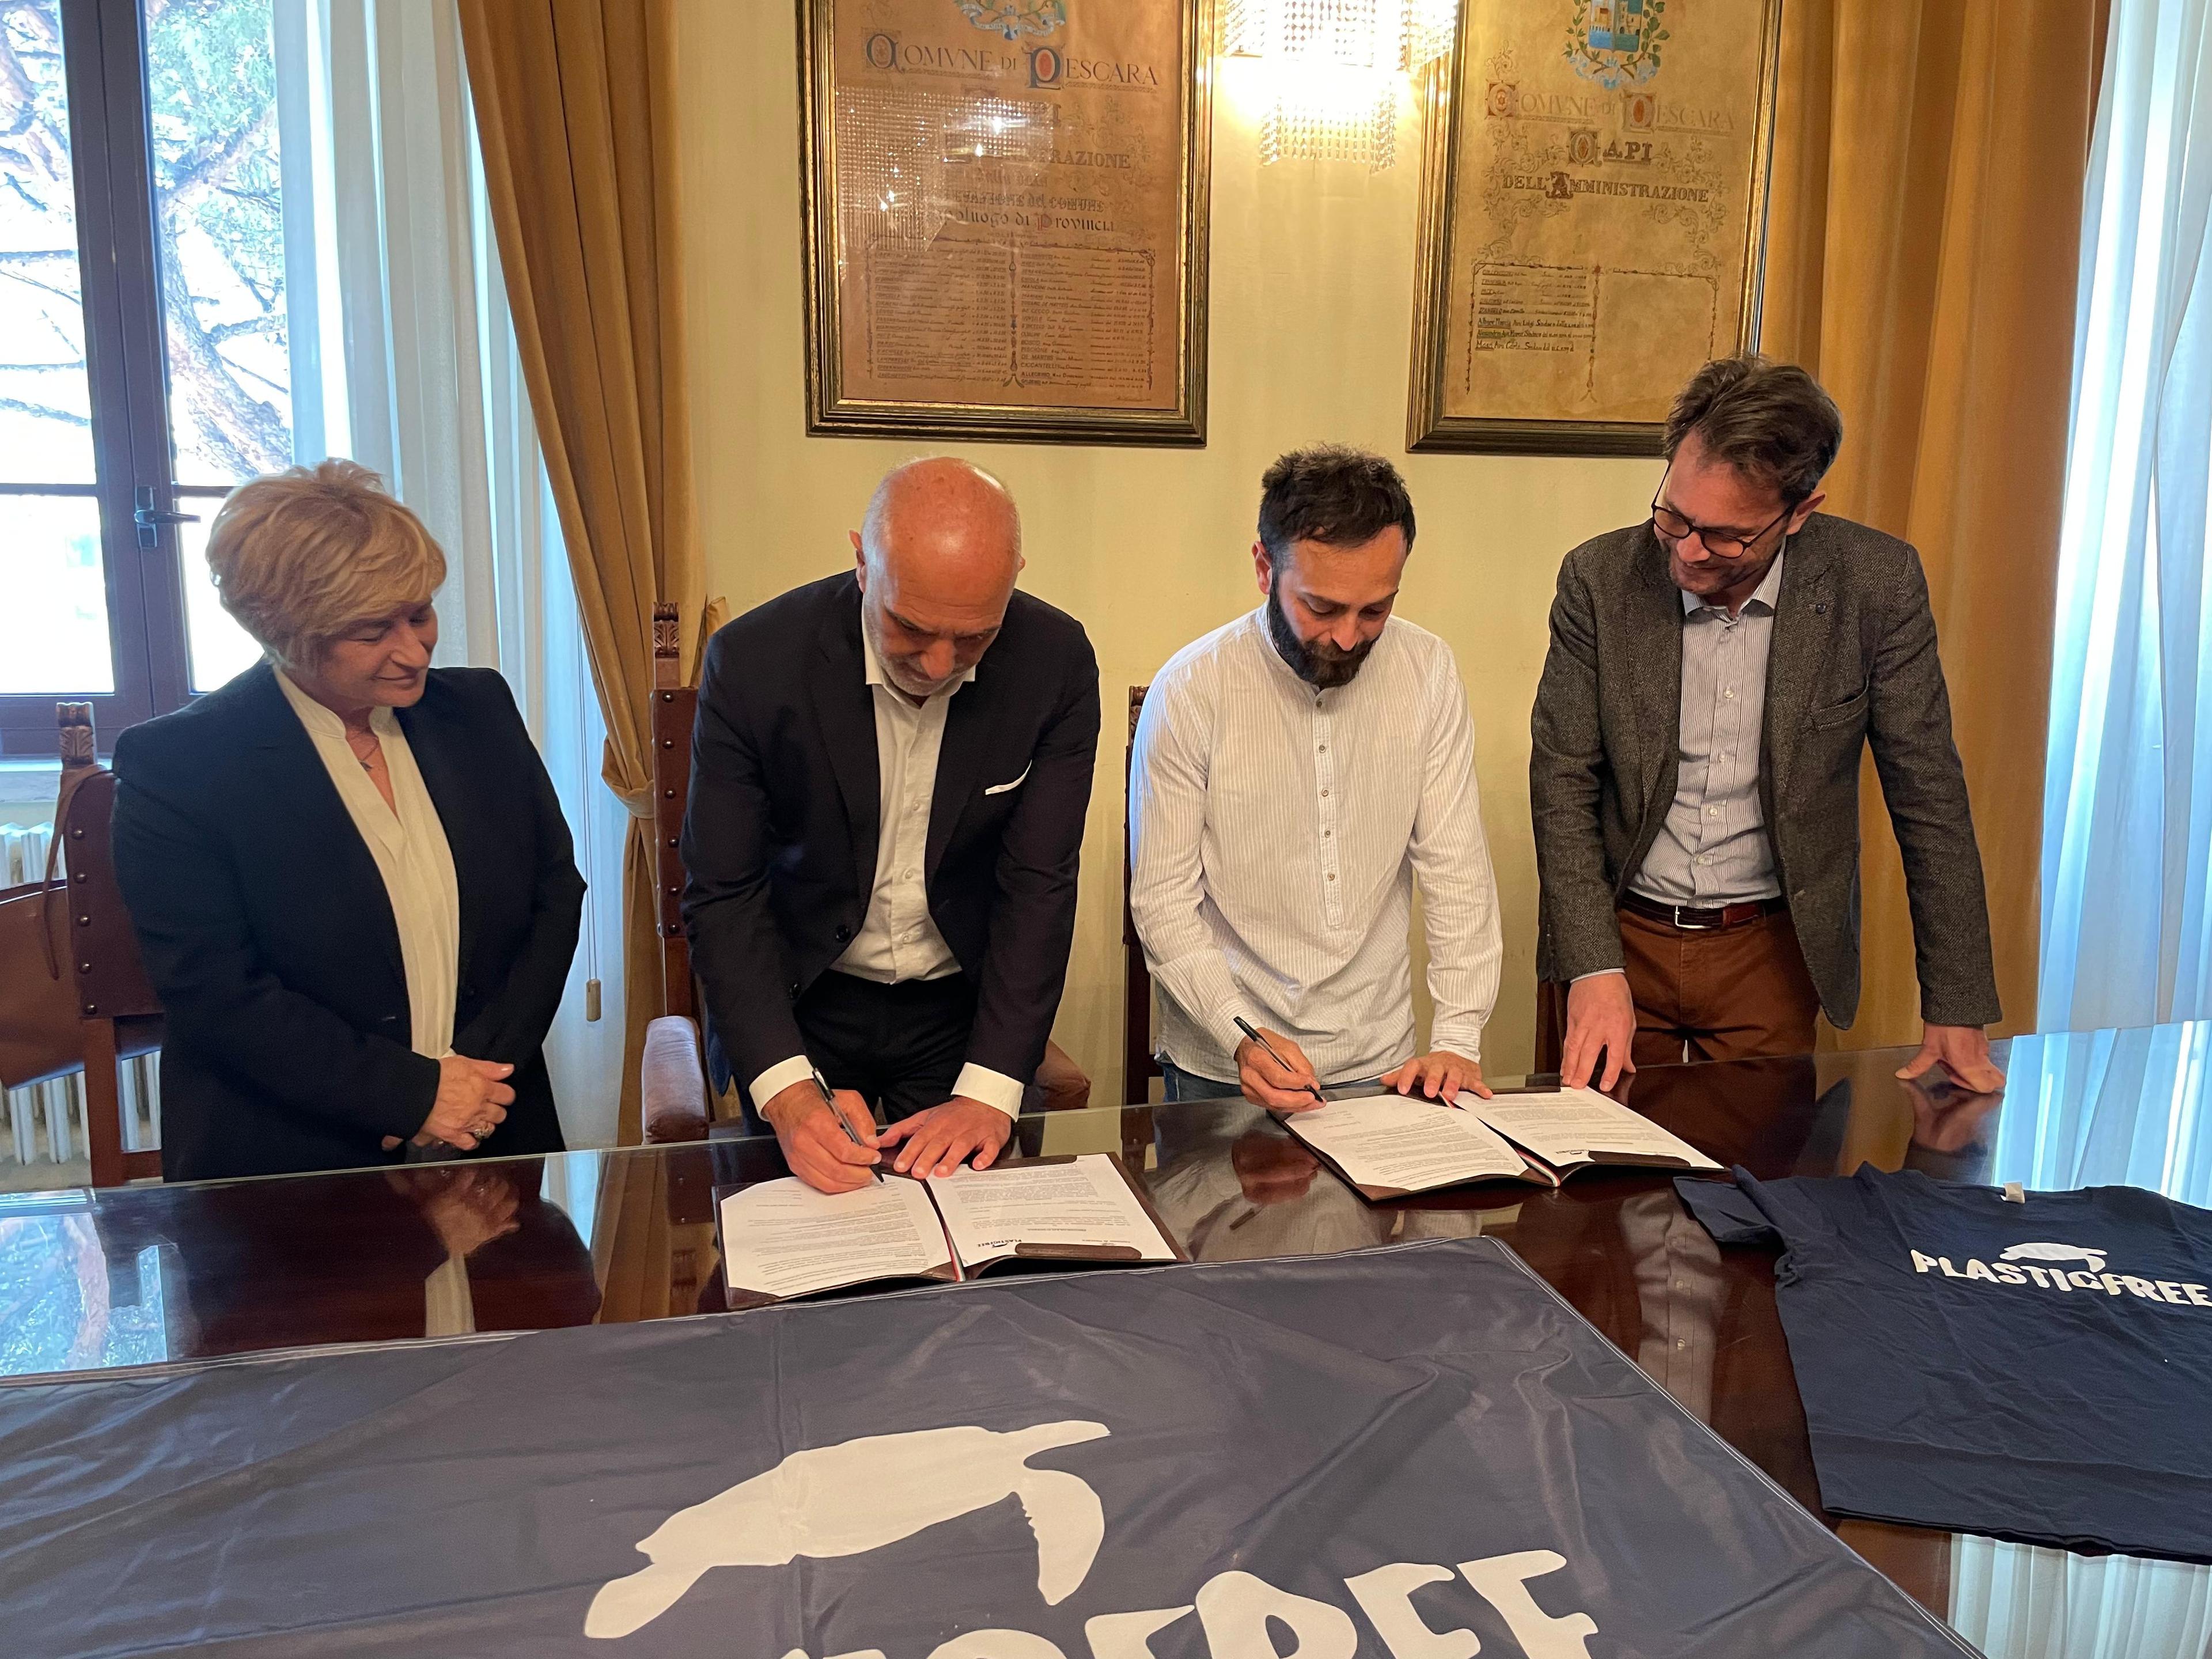 Il Comune di Pescara firma il protocollo d'intesa con Plastic Free Onlus